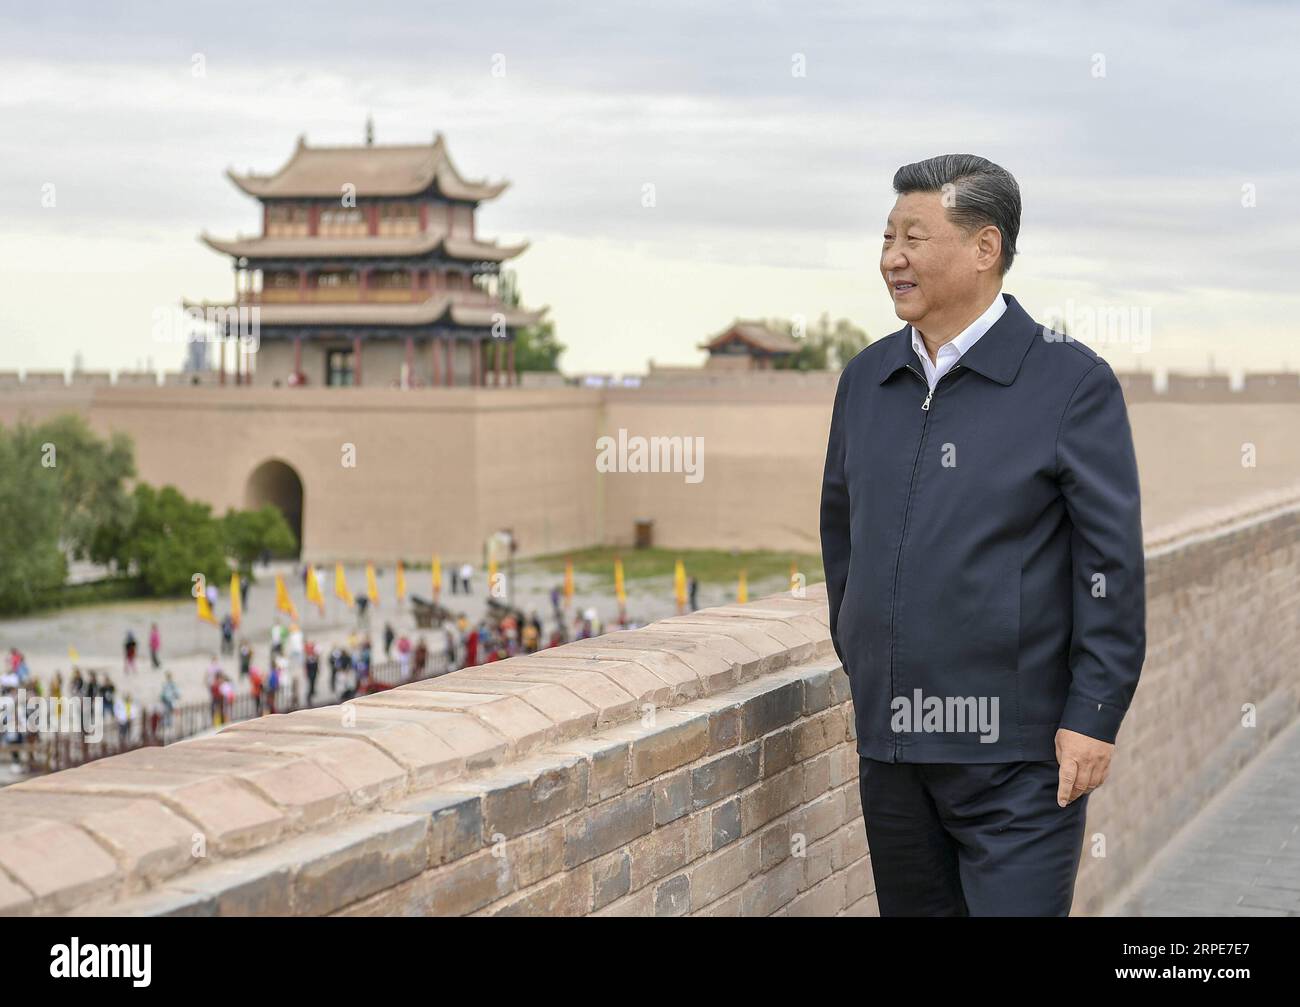 (190820) -- JIAYUGUAN, 20 agosto 2019 -- il presidente cinese Xi Jinping, anche segretario generale del Comitato centrale del Partito Comunista Cinese e presidente della Commissione militare centrale, visita il passo Jiayu, una famosa parte della grande Muraglia nella città di Jiayuguan, durante il suo tour di ispezione nella provincia del Gansu della Cina nord-occidentale, 20 agosto 2019. XI ascoltò anche un'introduzione al background storico e culturale della grande Muraglia e dei passi nel corridoio di Hexi, parte dell'antica via della Seta nella Cina nord-occidentale. CHINA-GANSU-XI JINPING-INSPECTION (CN) XIEXHUANCHI PUBLICATIONXNOTXINXC Foto Stock